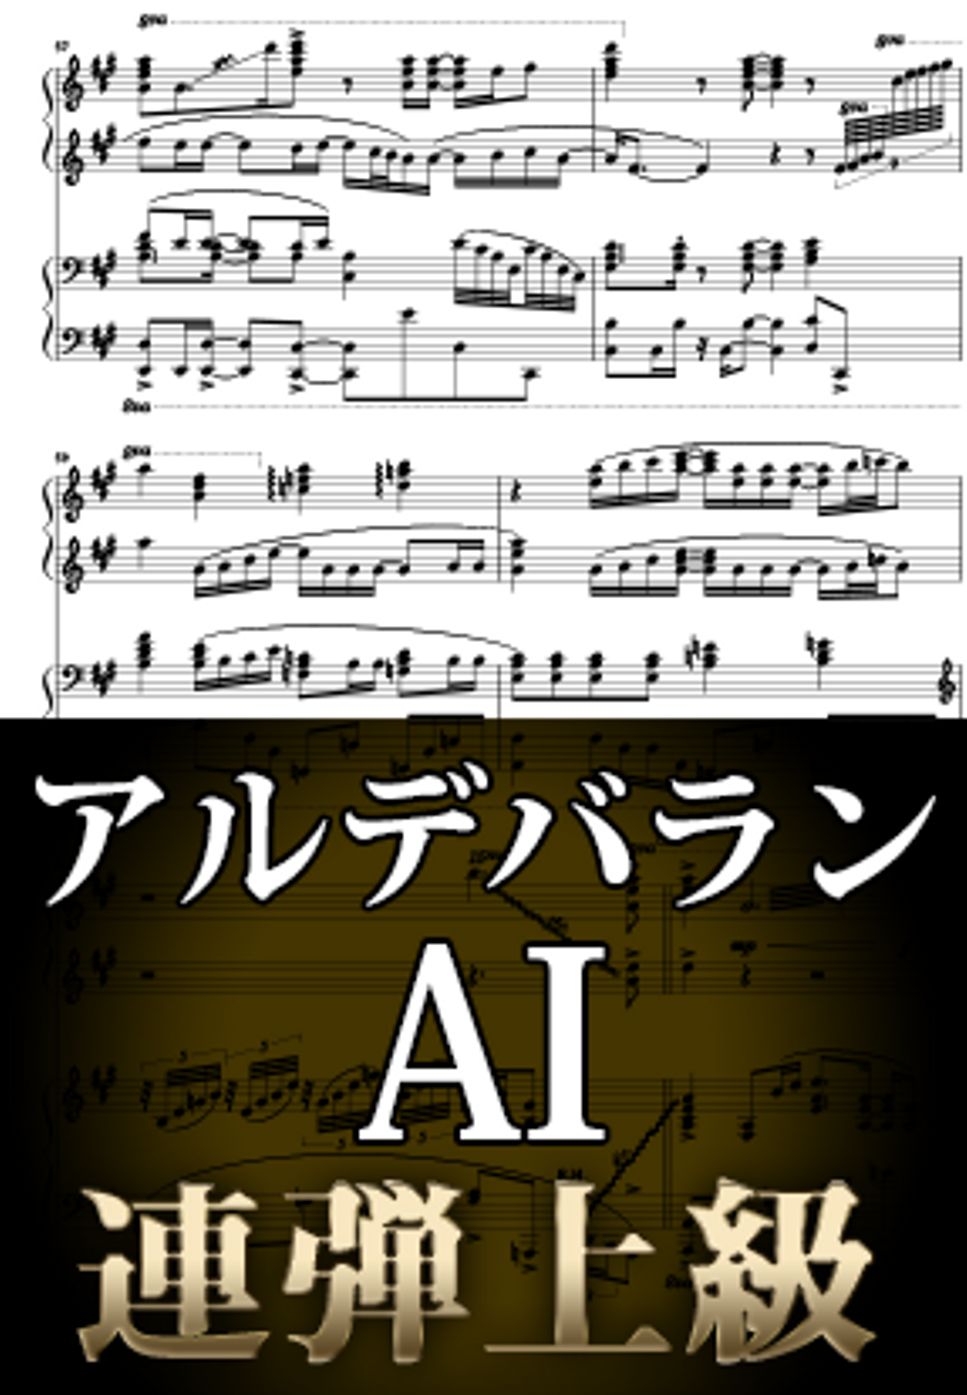 AI - アルデバラン (ピアノ連弾上級  / NHK連続テレビ小説『カムカムエヴリバディ』主題歌) by Suu